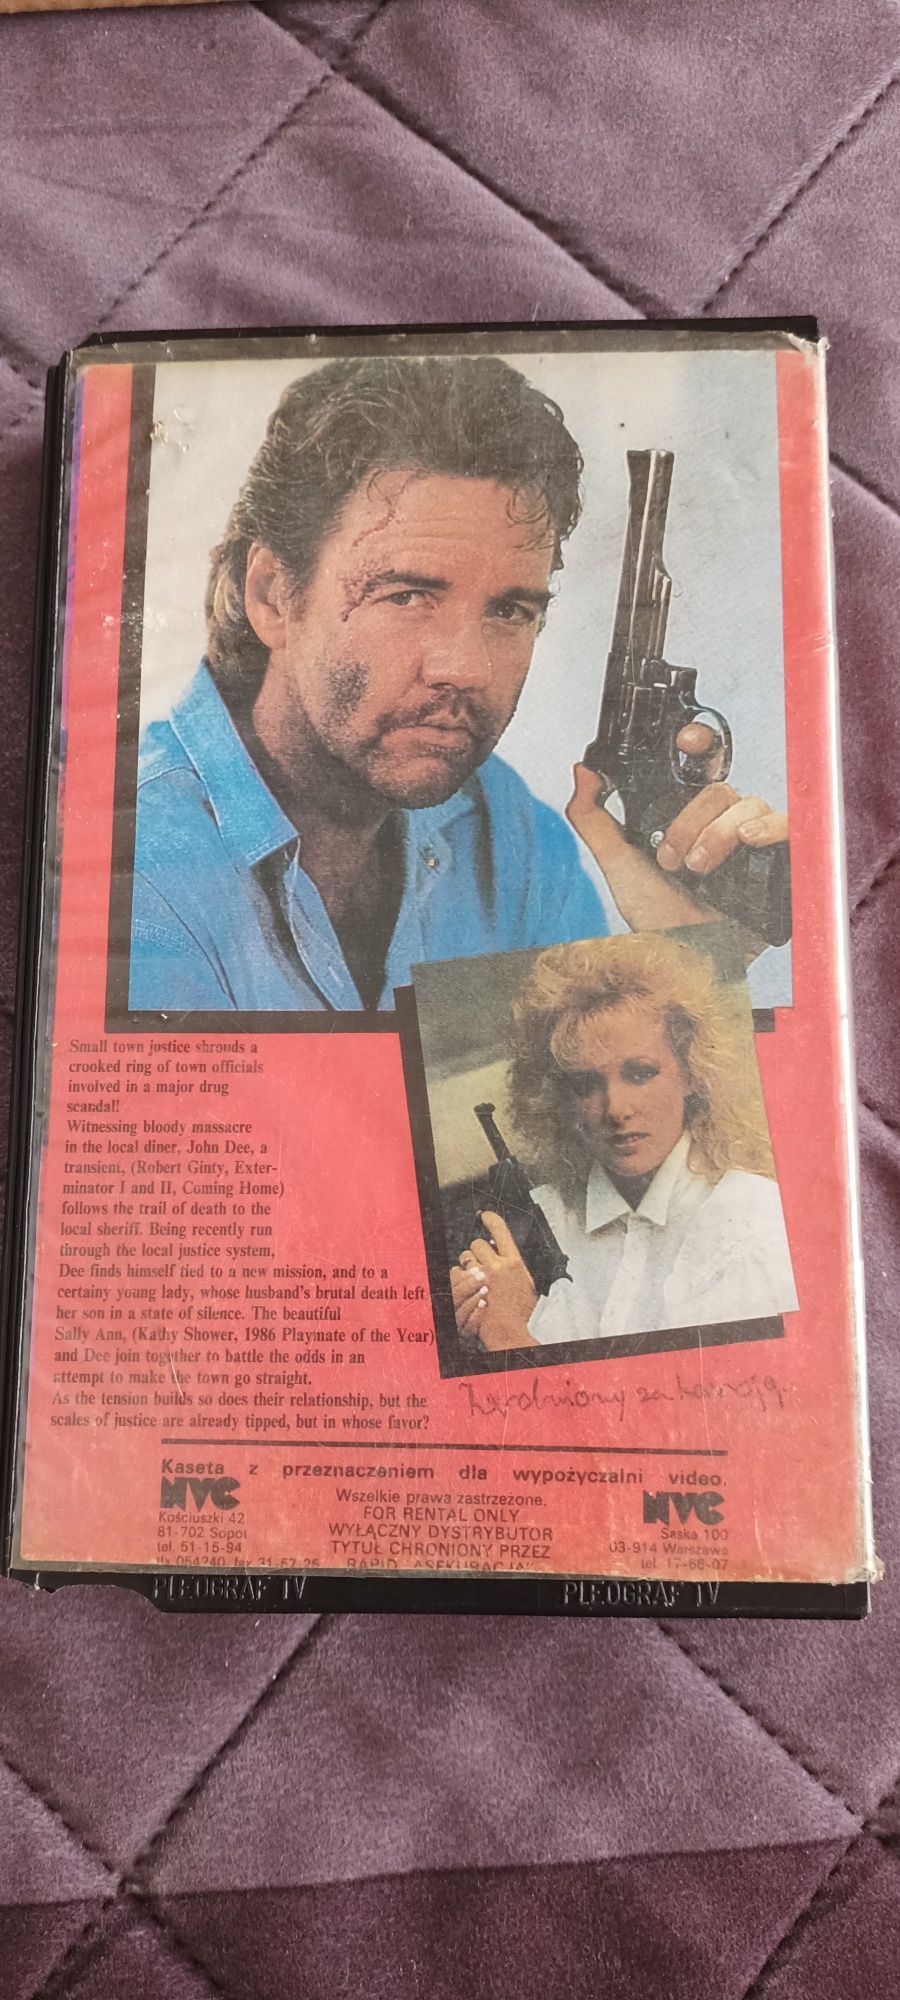 Kaseta VHS z filmem Out on ball 1989